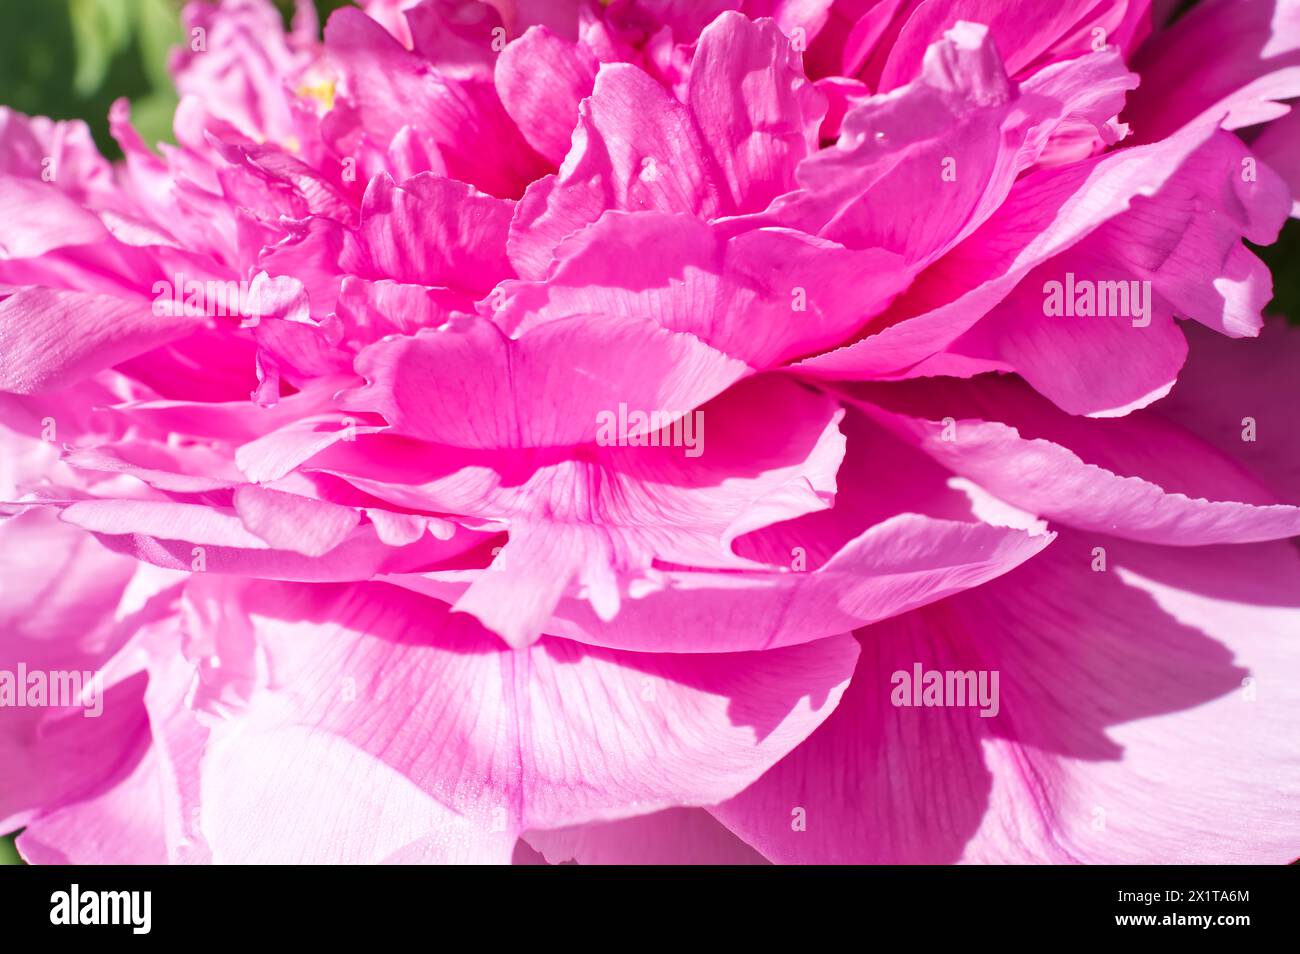 Gros plan des pétales d'une fleur de pivoine rose au printemps Banque D'Images